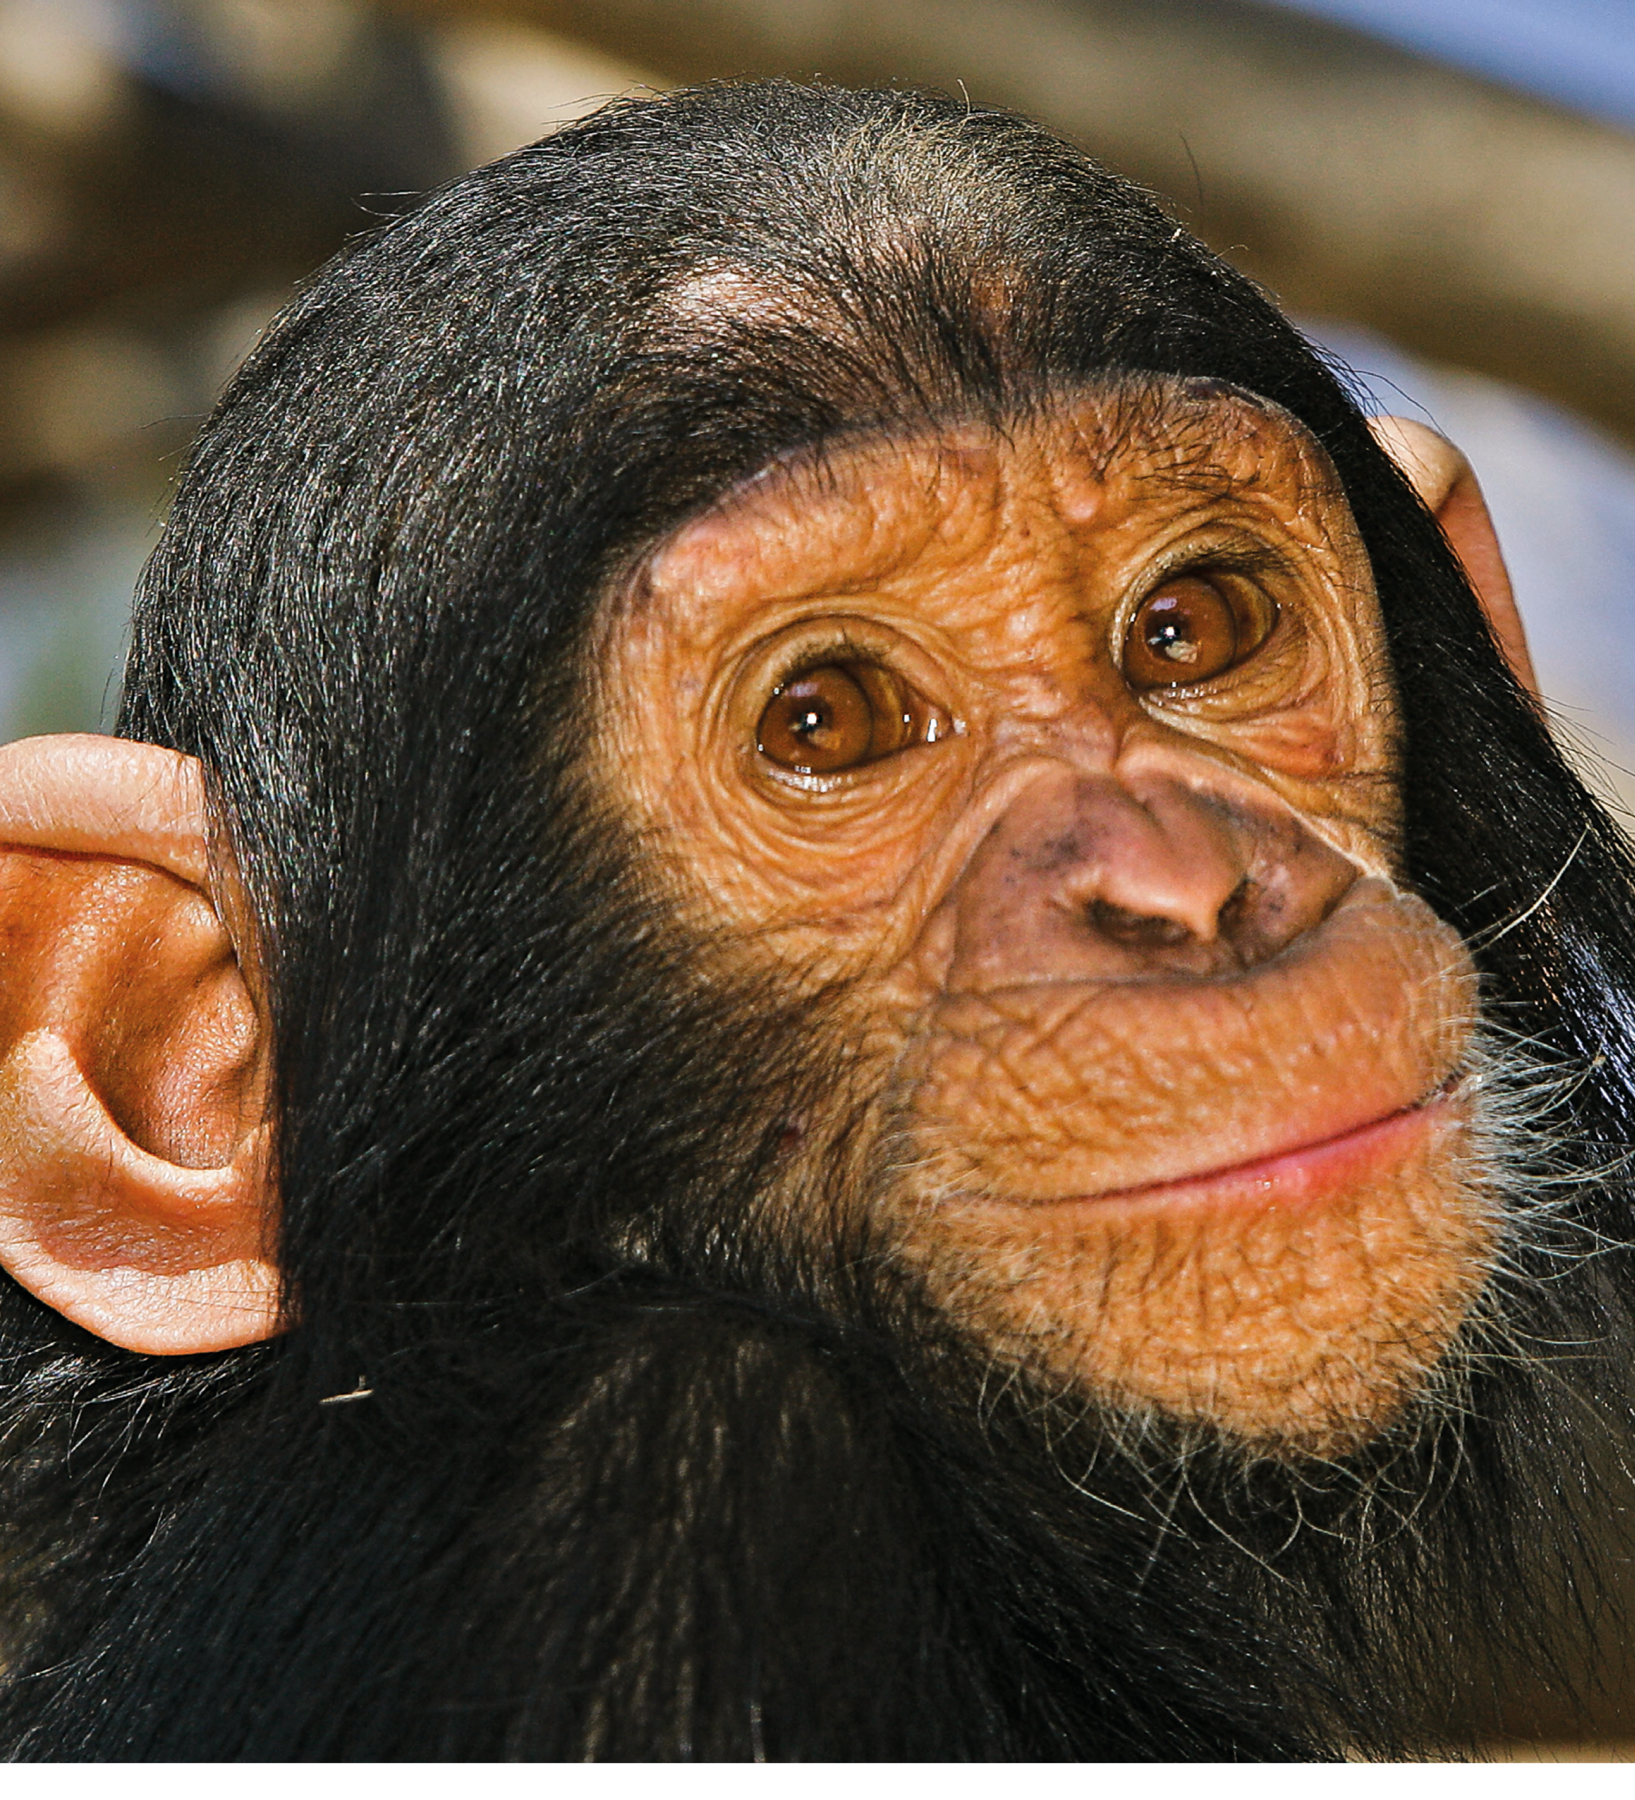 Fotografia. Destaque para a cara de um chimpanzé.